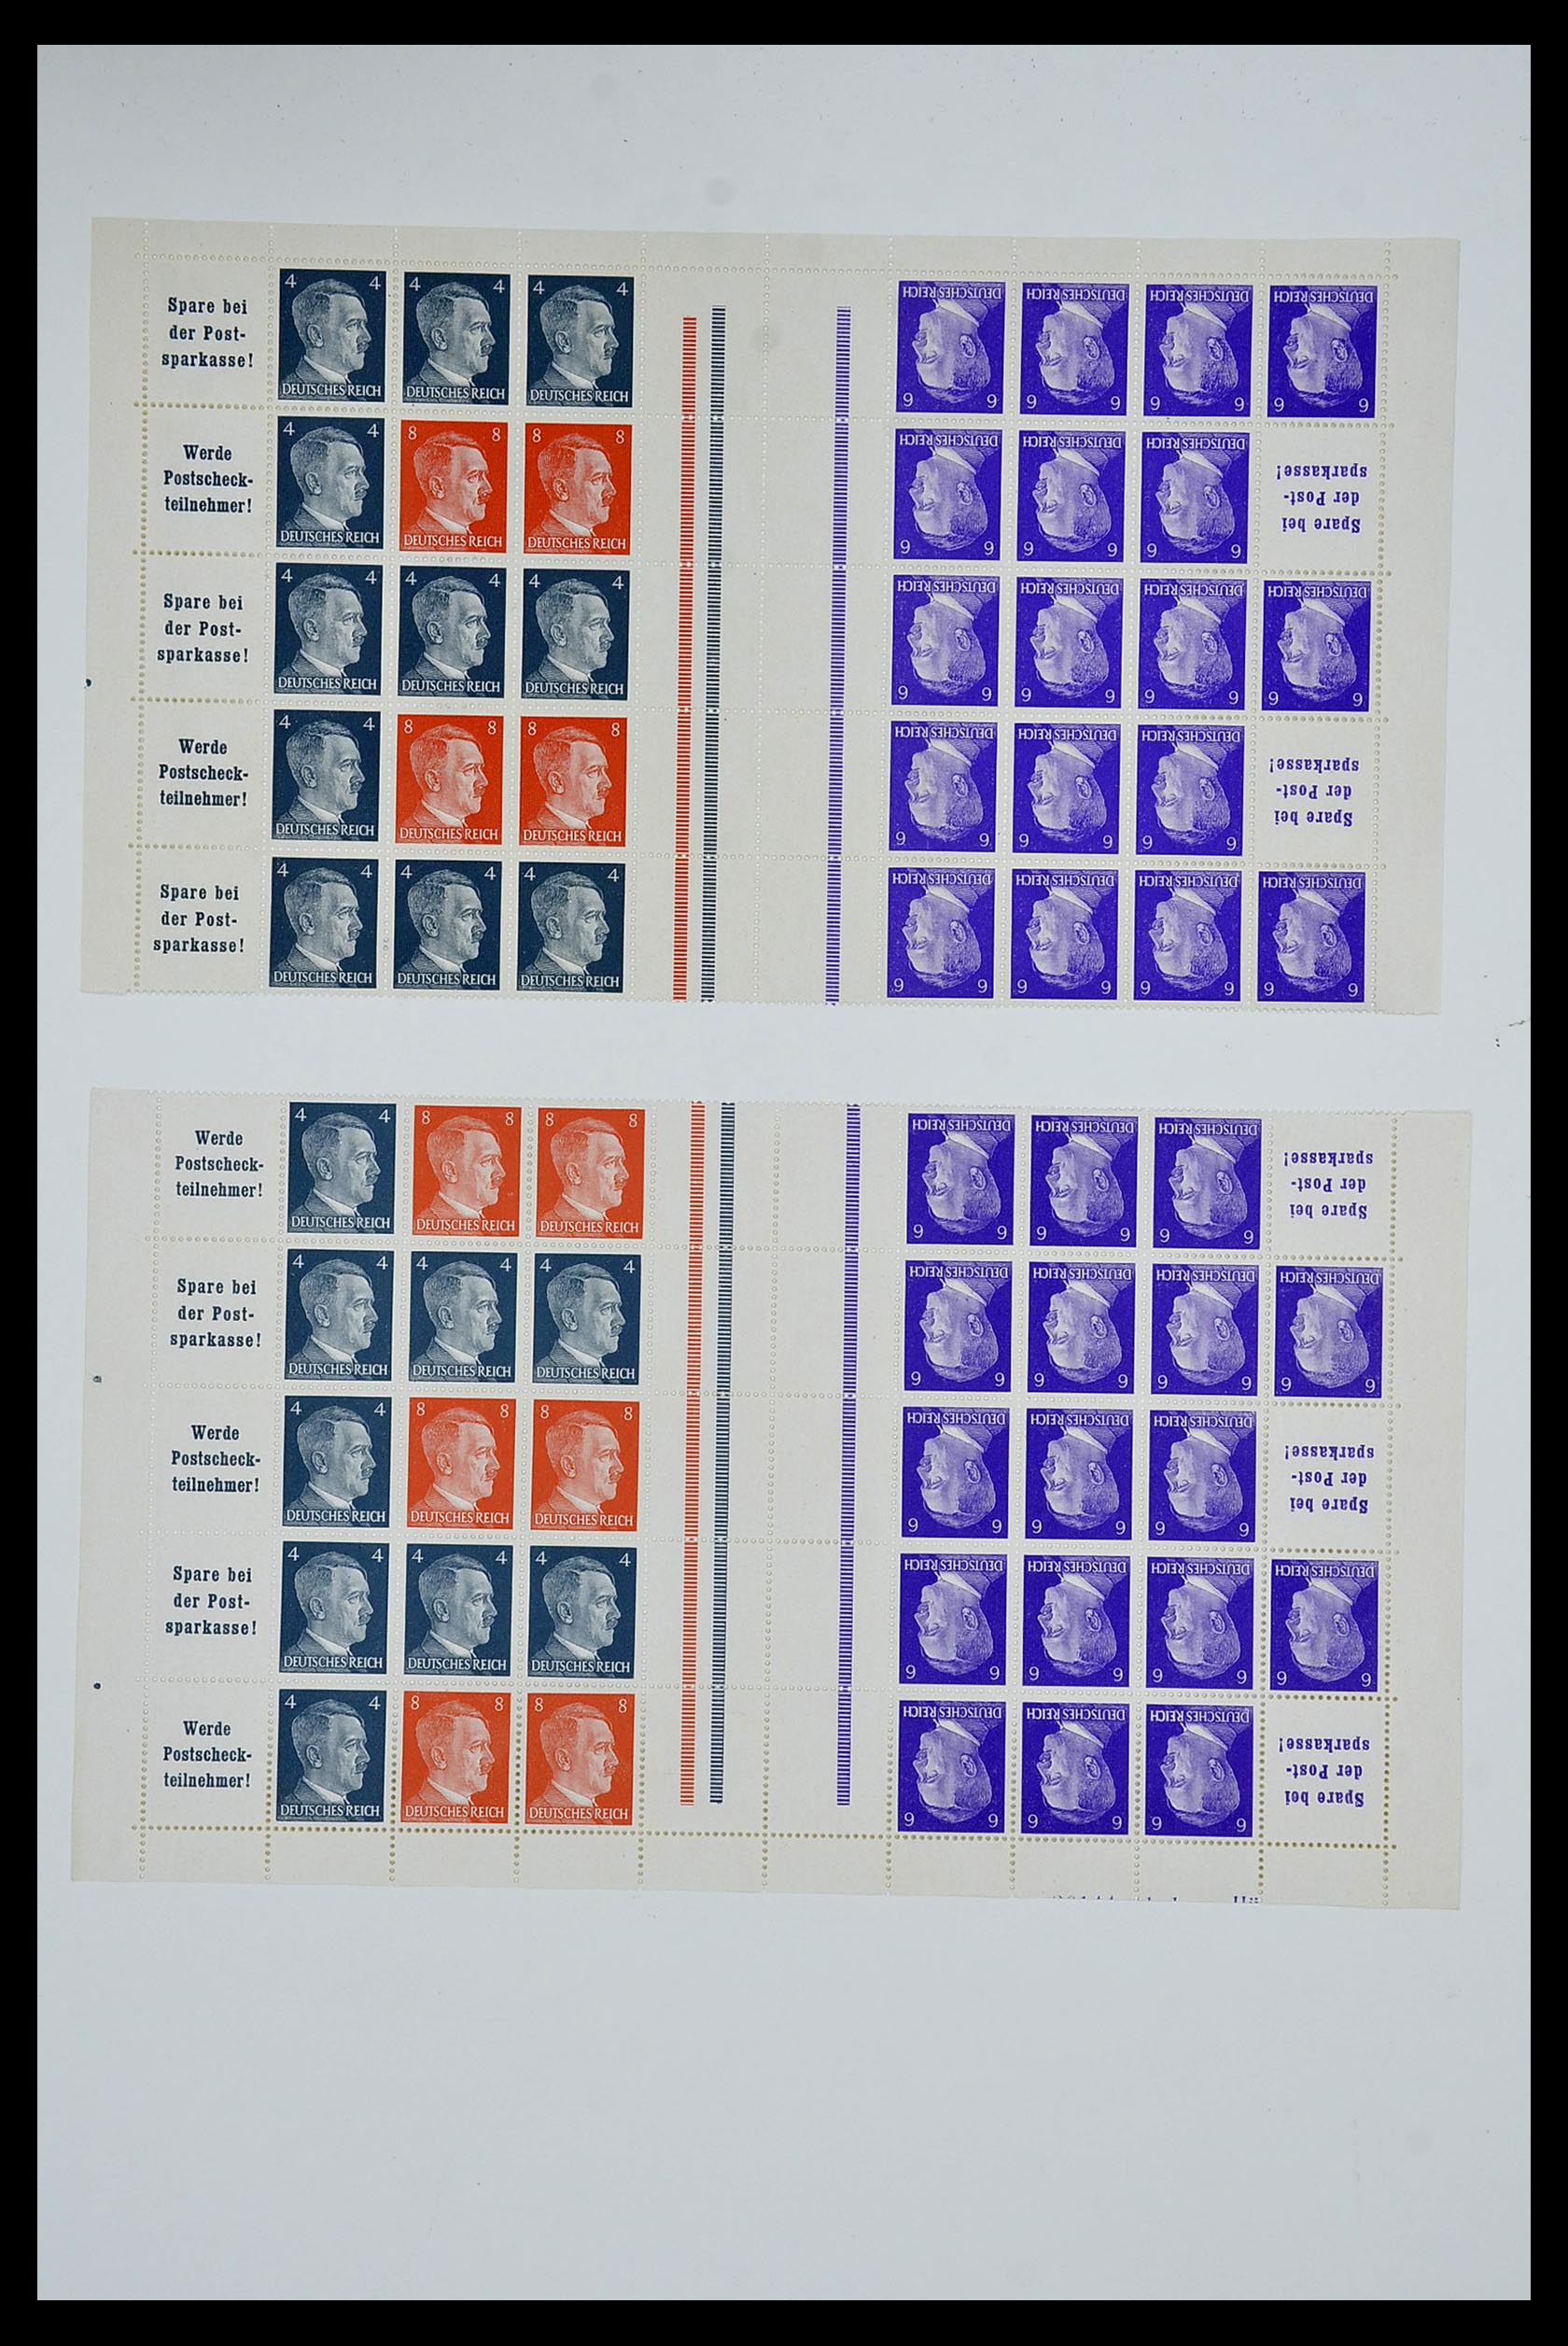 34164 075 - Stamp collection 34164 German Reich Markenheftchenbogen 1933-1942.